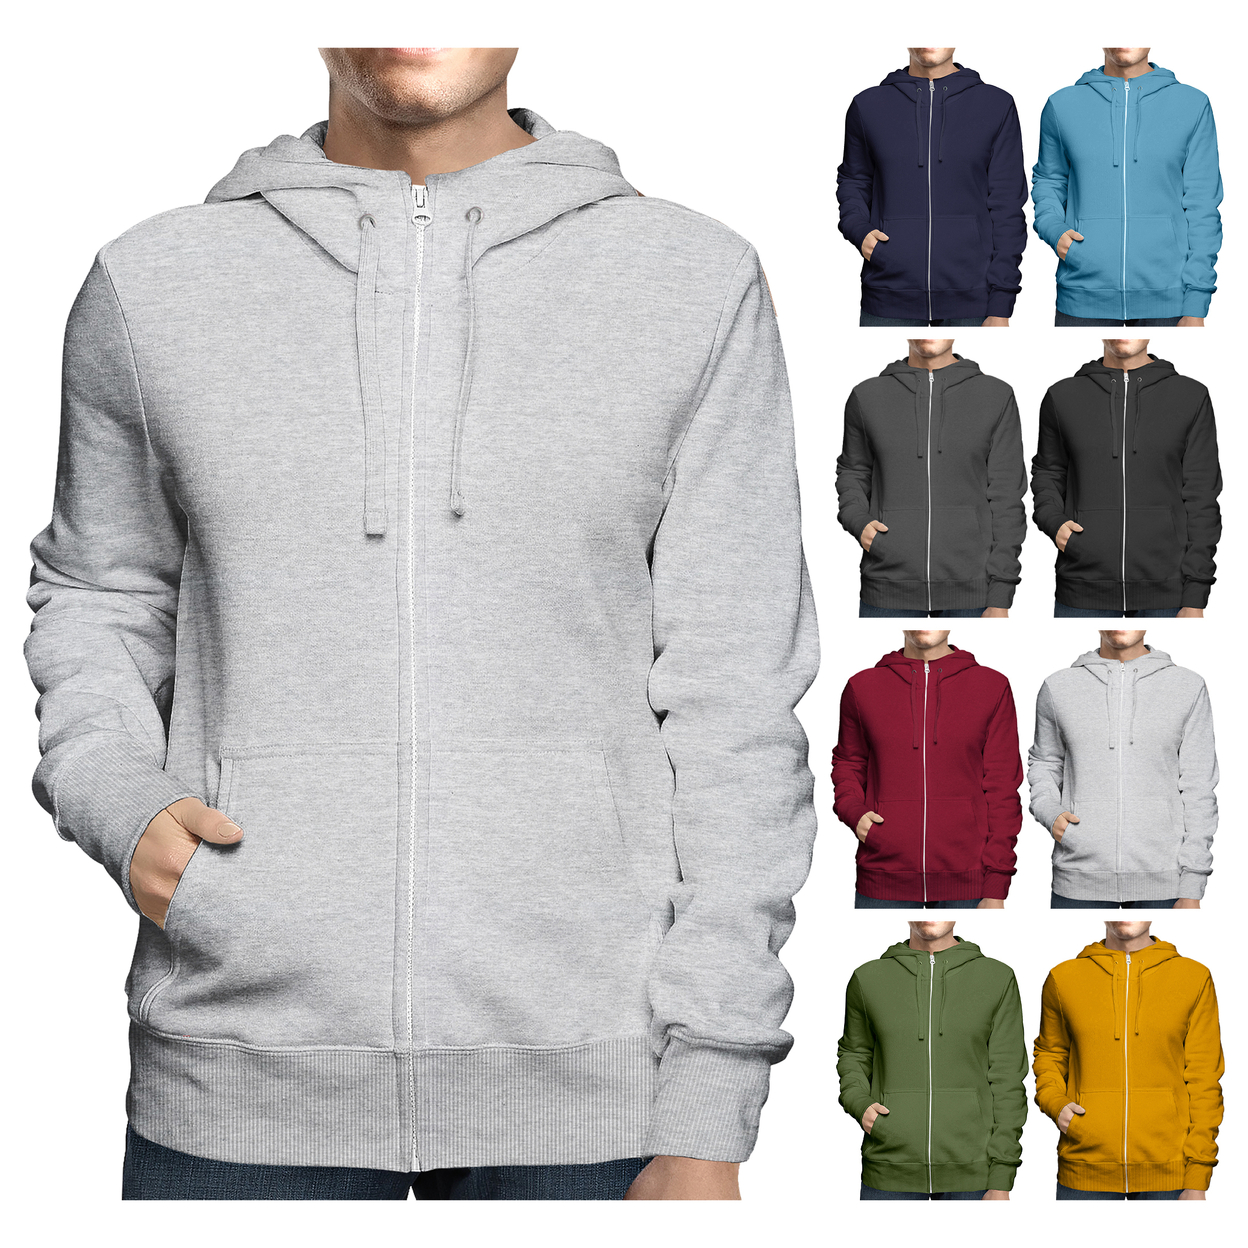 2-Pack: Men's Winter Warm Soft Full Zip-Up Fleece Lined Hoodie Sweatshirt - Black & Navy, Large